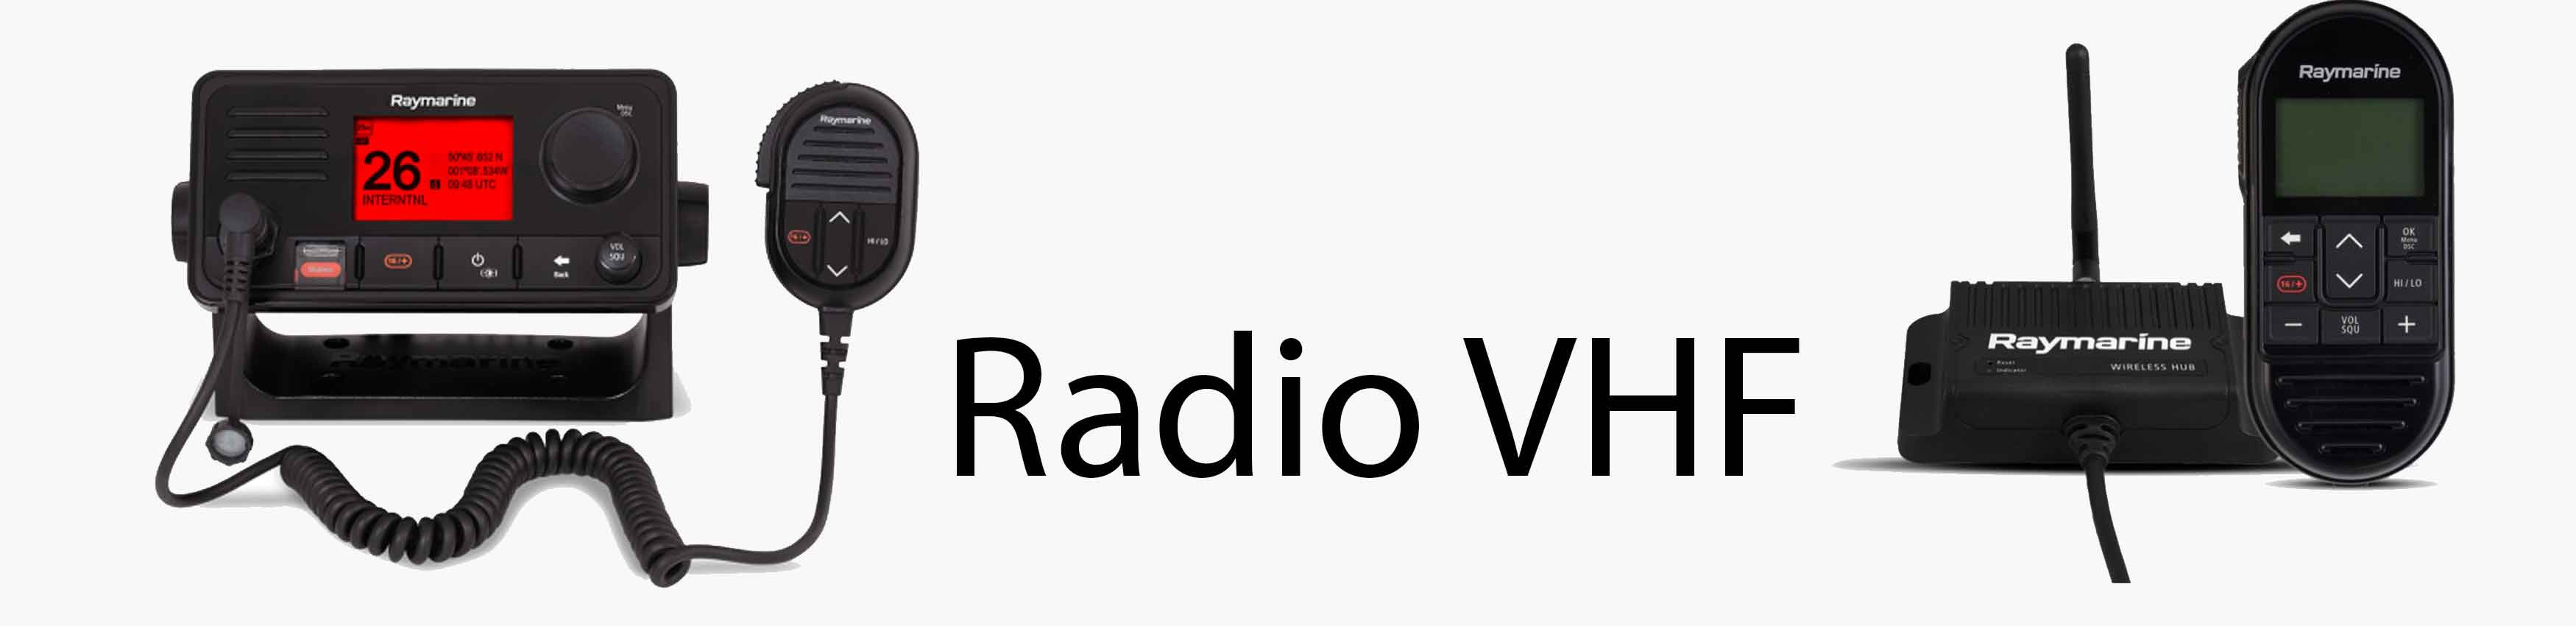 Radio Vhf